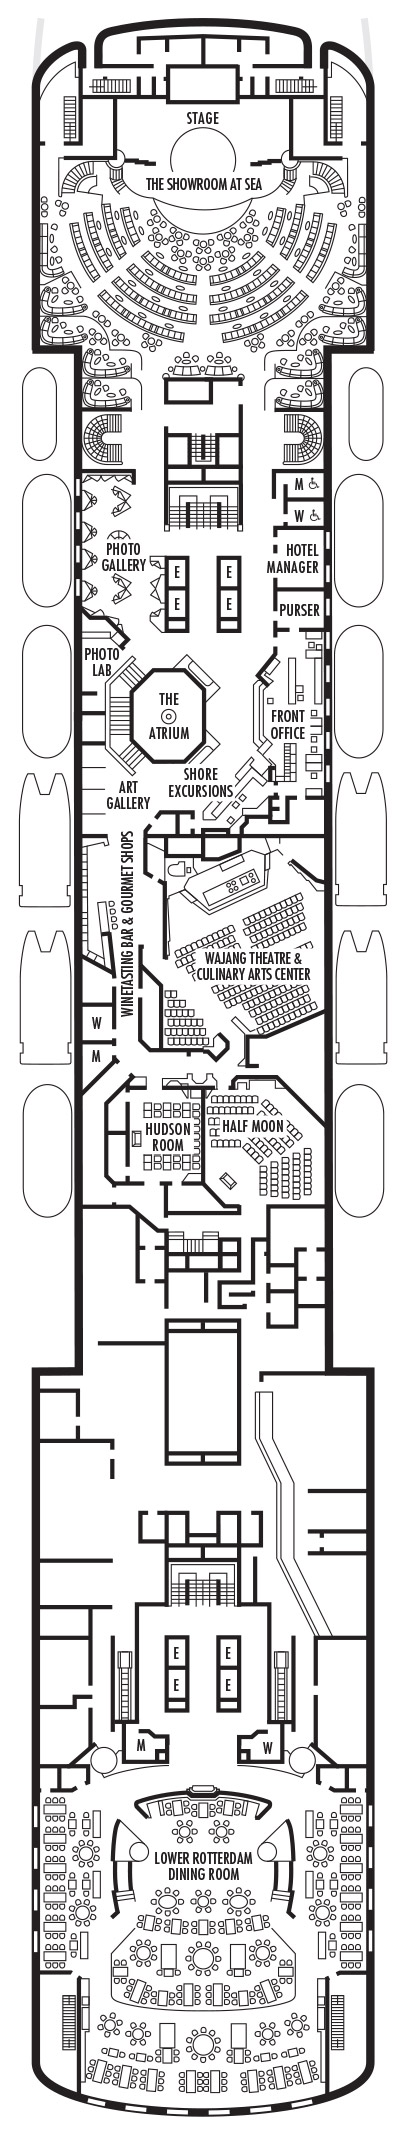 ms Veendam Deck Plans